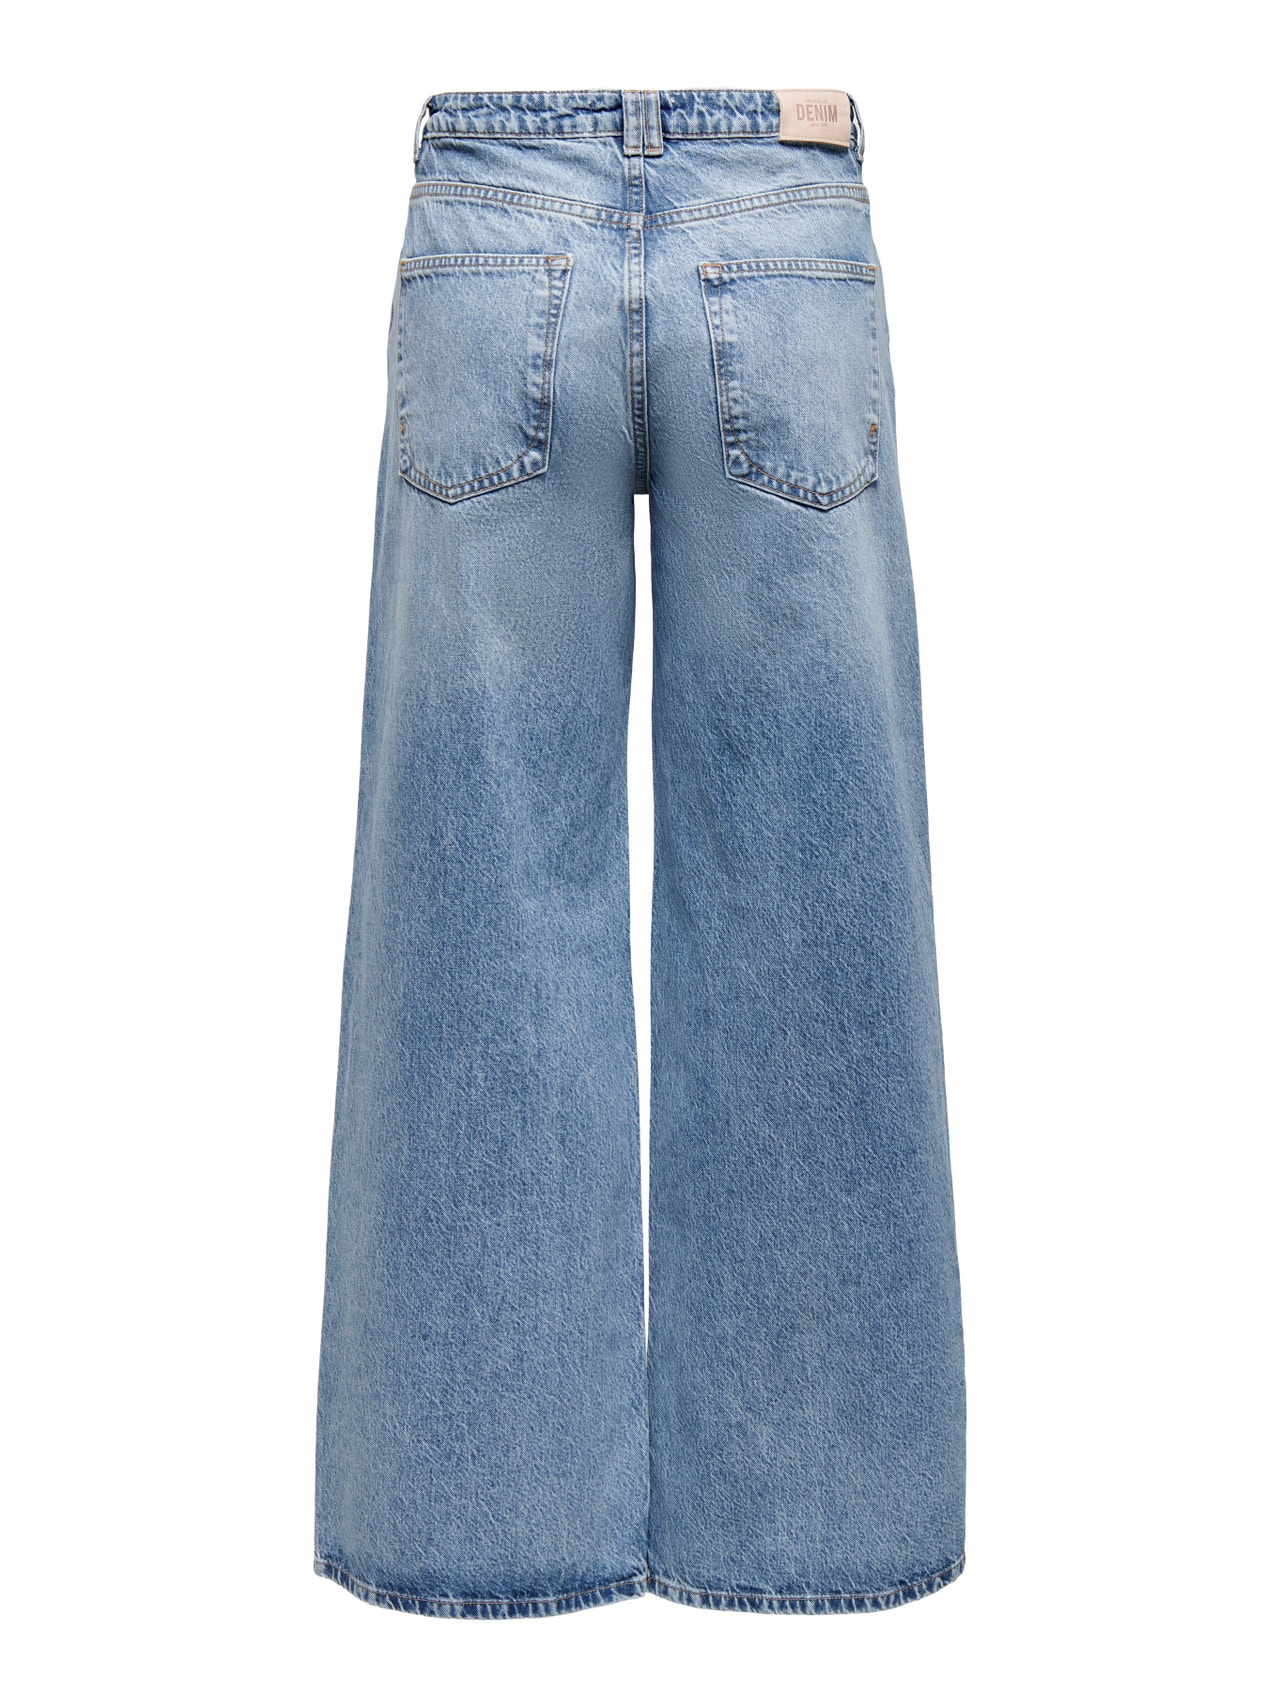 ONLY ONLVELA High Waist EXtra WIDE Jeans -Medium Blue Denim - 15267017